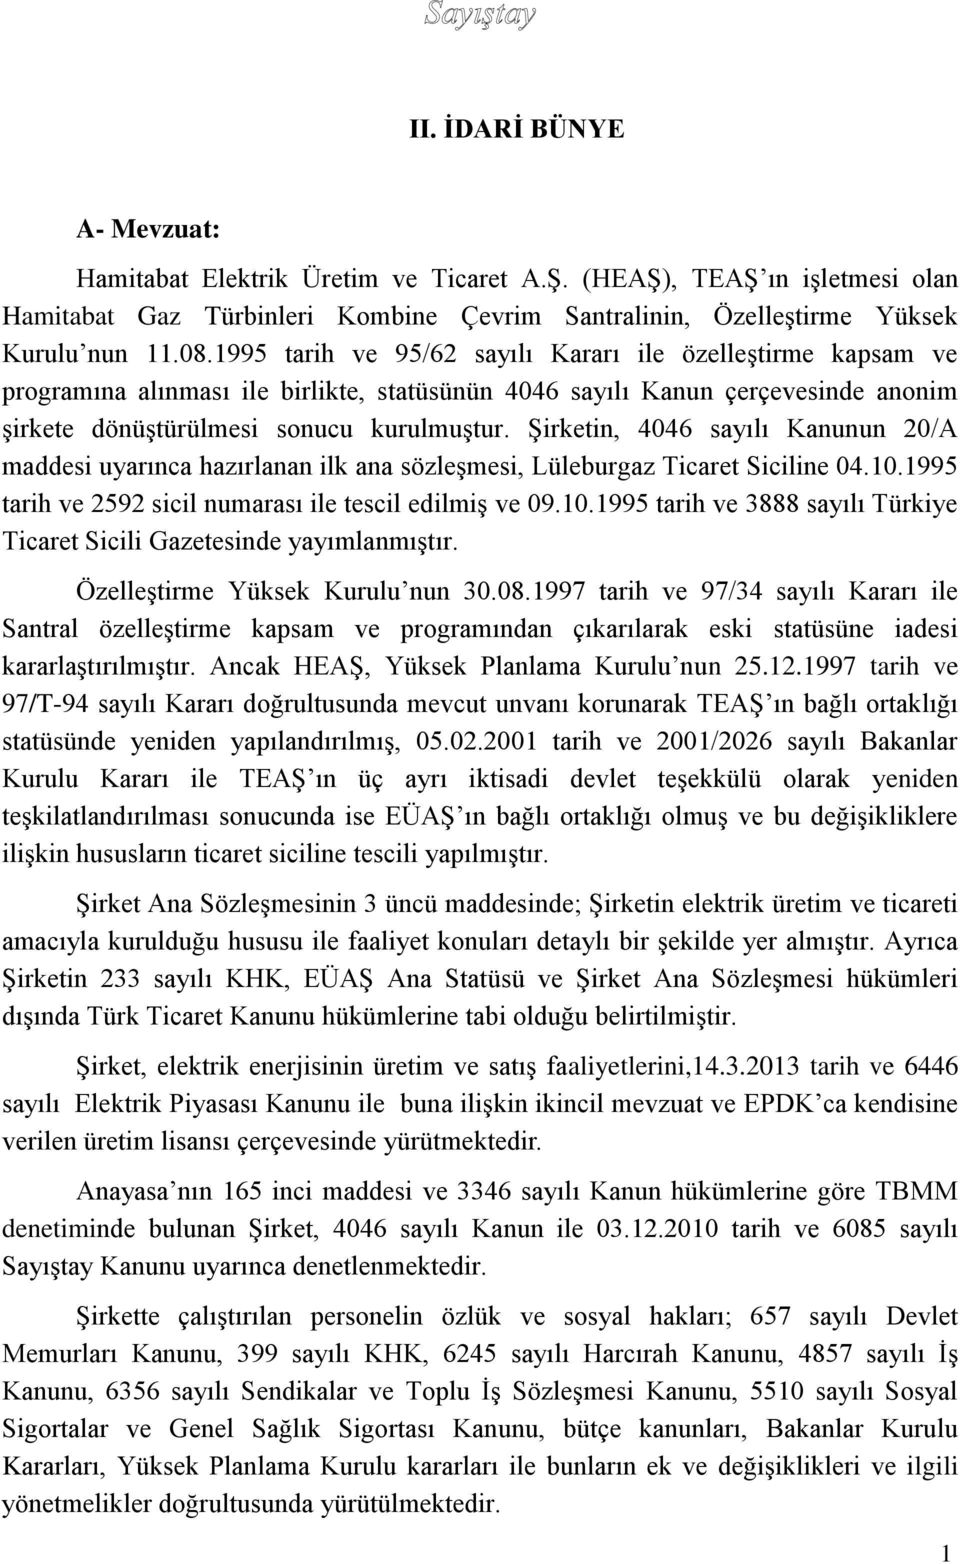 Şirketin, 4046 sayılı Kanunun 20/A maddesi uyarınca hazırlanan ilk ana sözleşmesi, Lüleburgaz Ticaret Siciline 04.10.1995 tarih ve 2592 sicil numarası ile tescil edilmiş ve 09.10.1995 tarih ve 3888 sayılı Türkiye Ticaret Sicili Gazetesinde yayımlanmıştır.